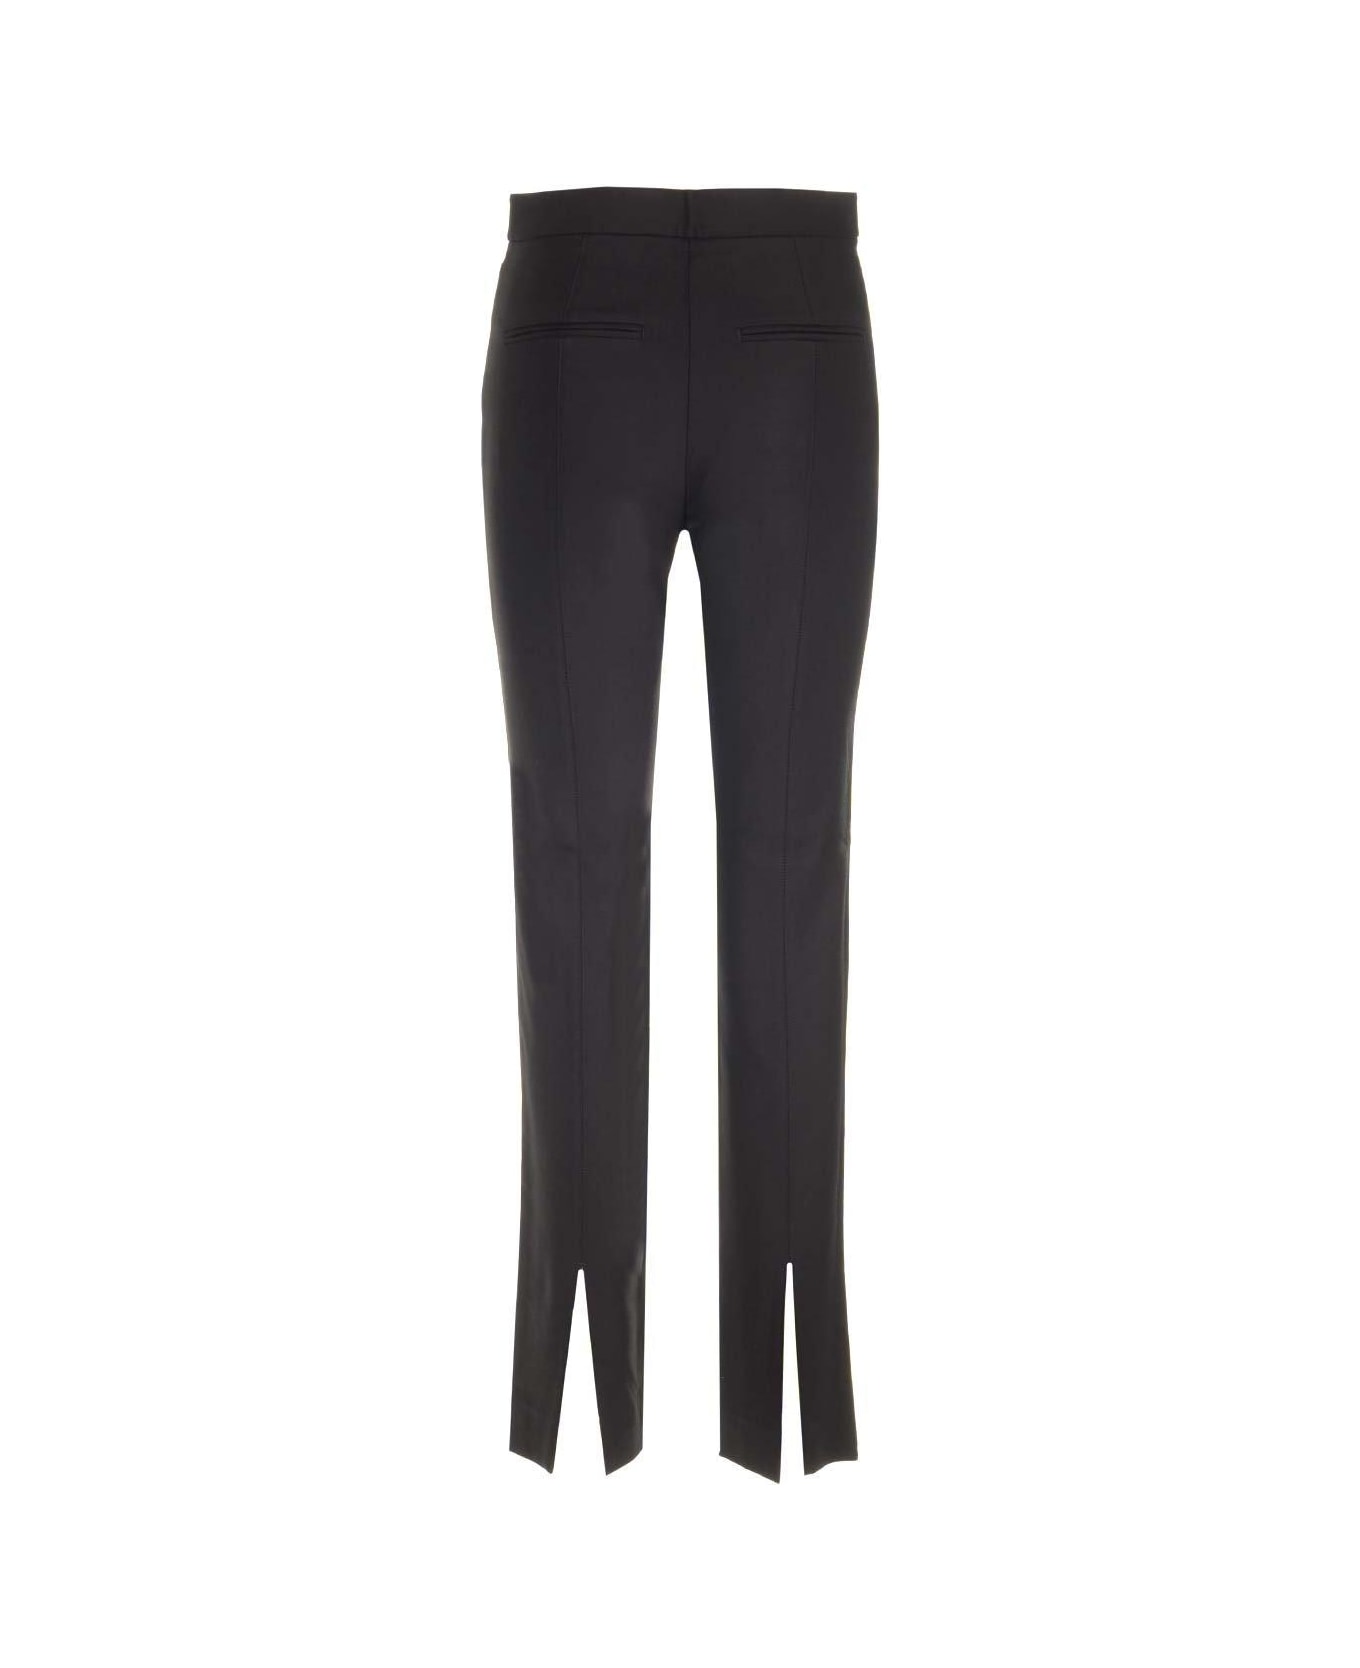 Totême High-waisted Slim-cut Trousers - BLACK 001 ボトムス